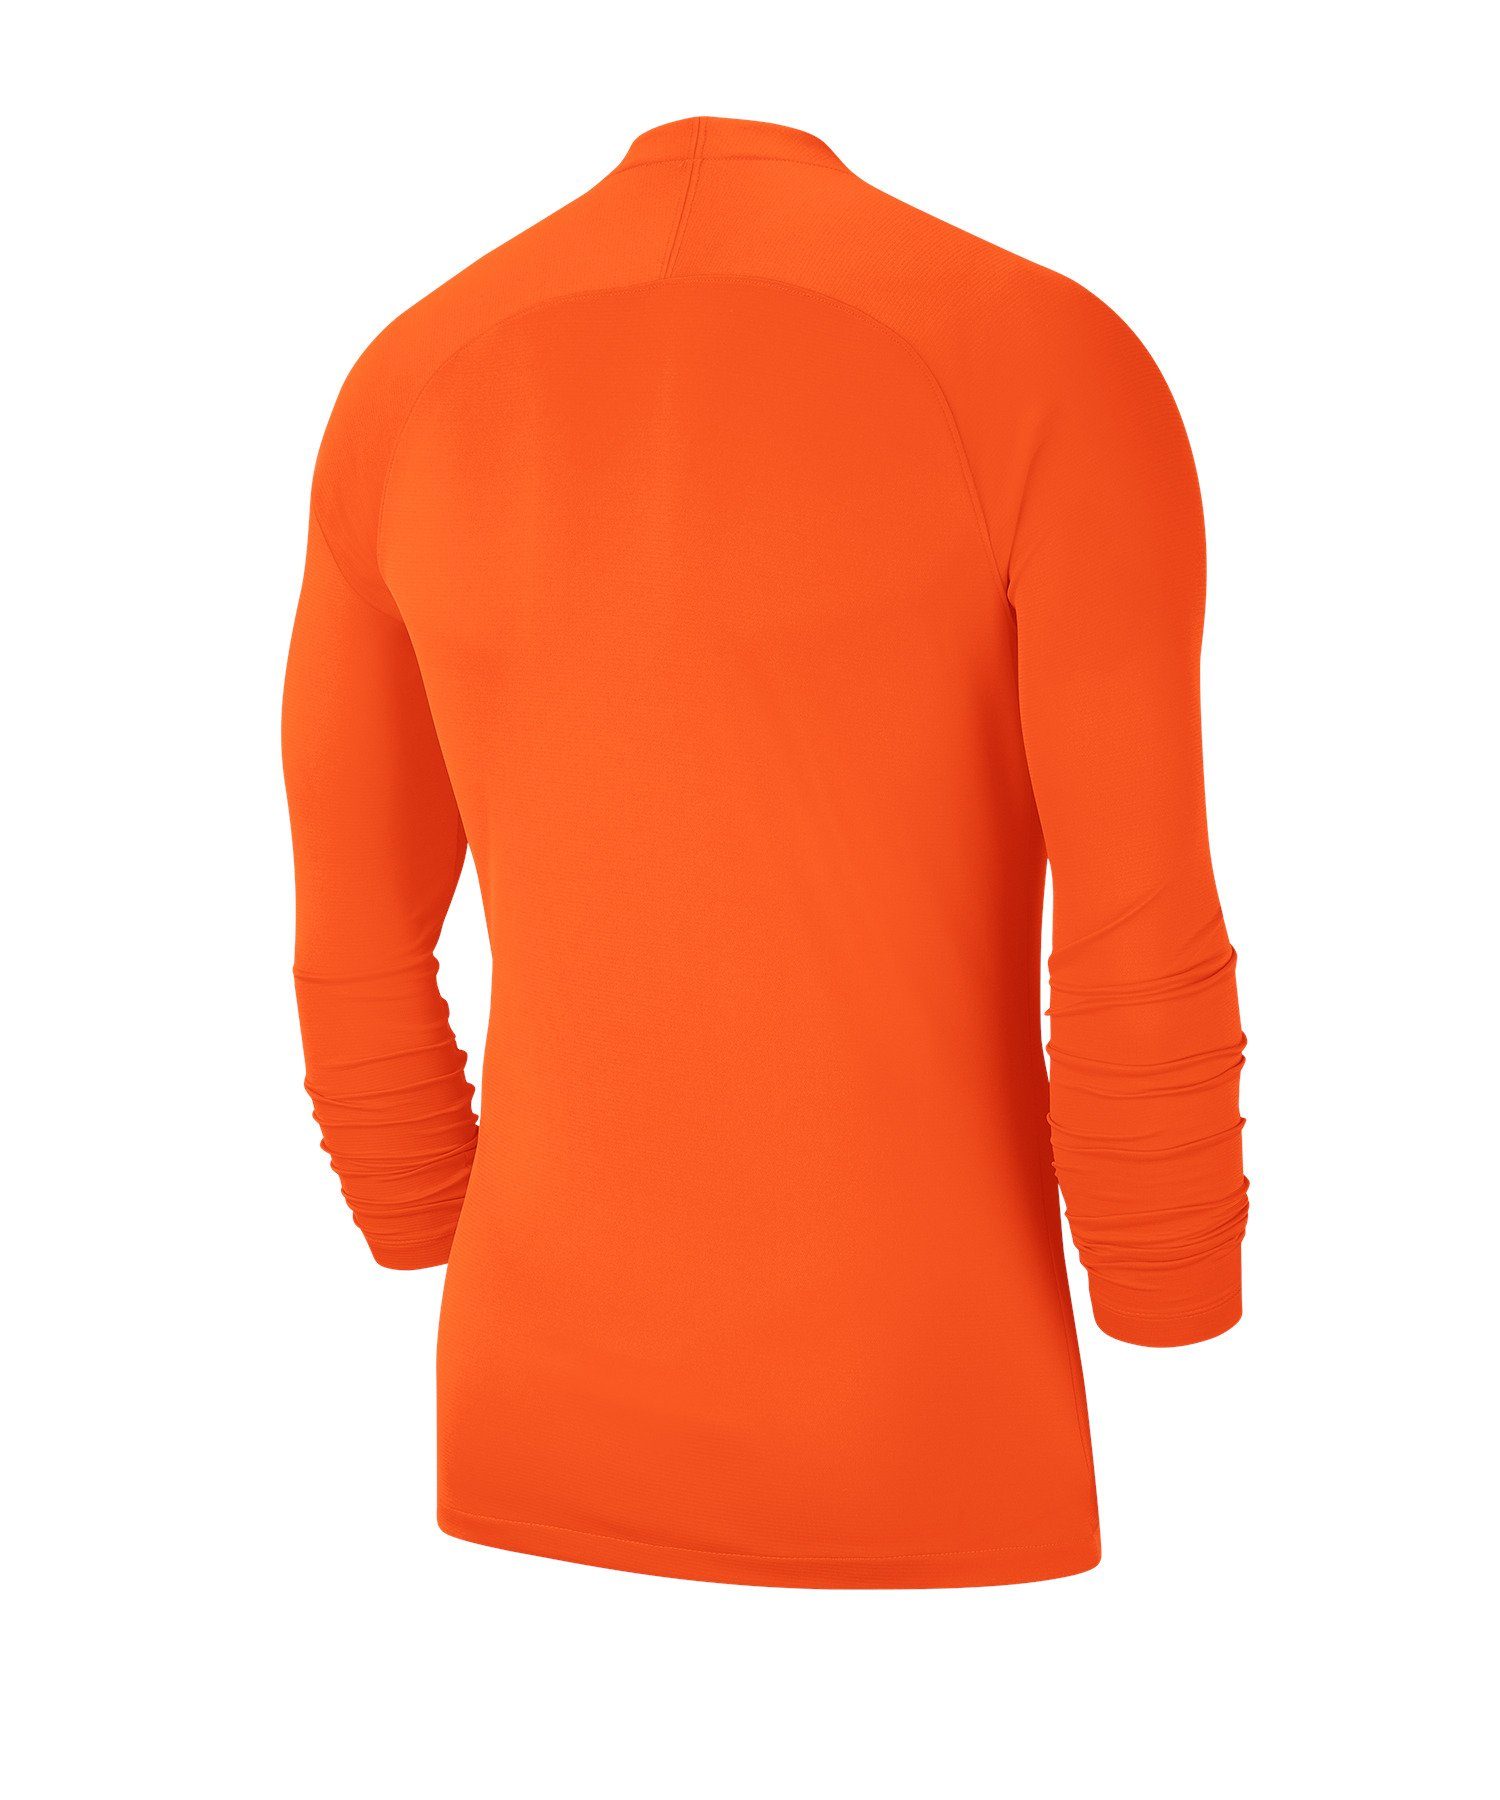 Layer Daumenöffnung First Park Funktionsshirt orange Top Kids Nike